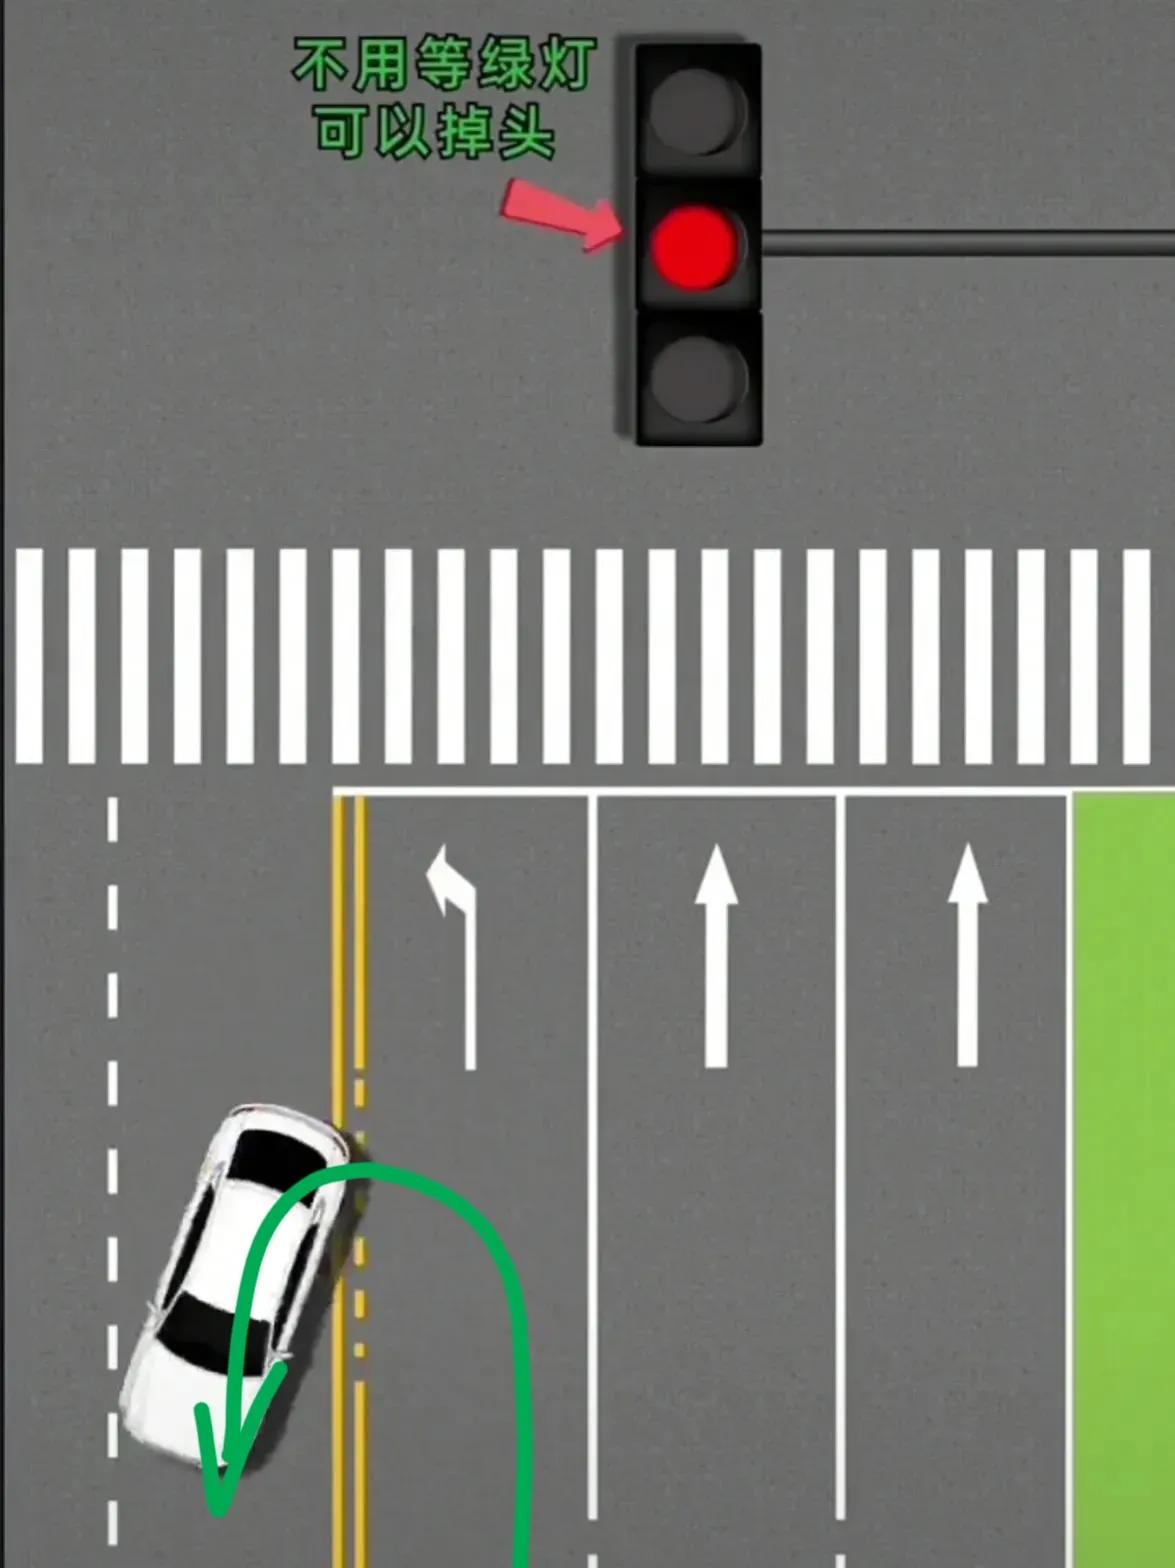 学会这7种掉头，绿灯4种，红灯3种，再也不怕路口掉头